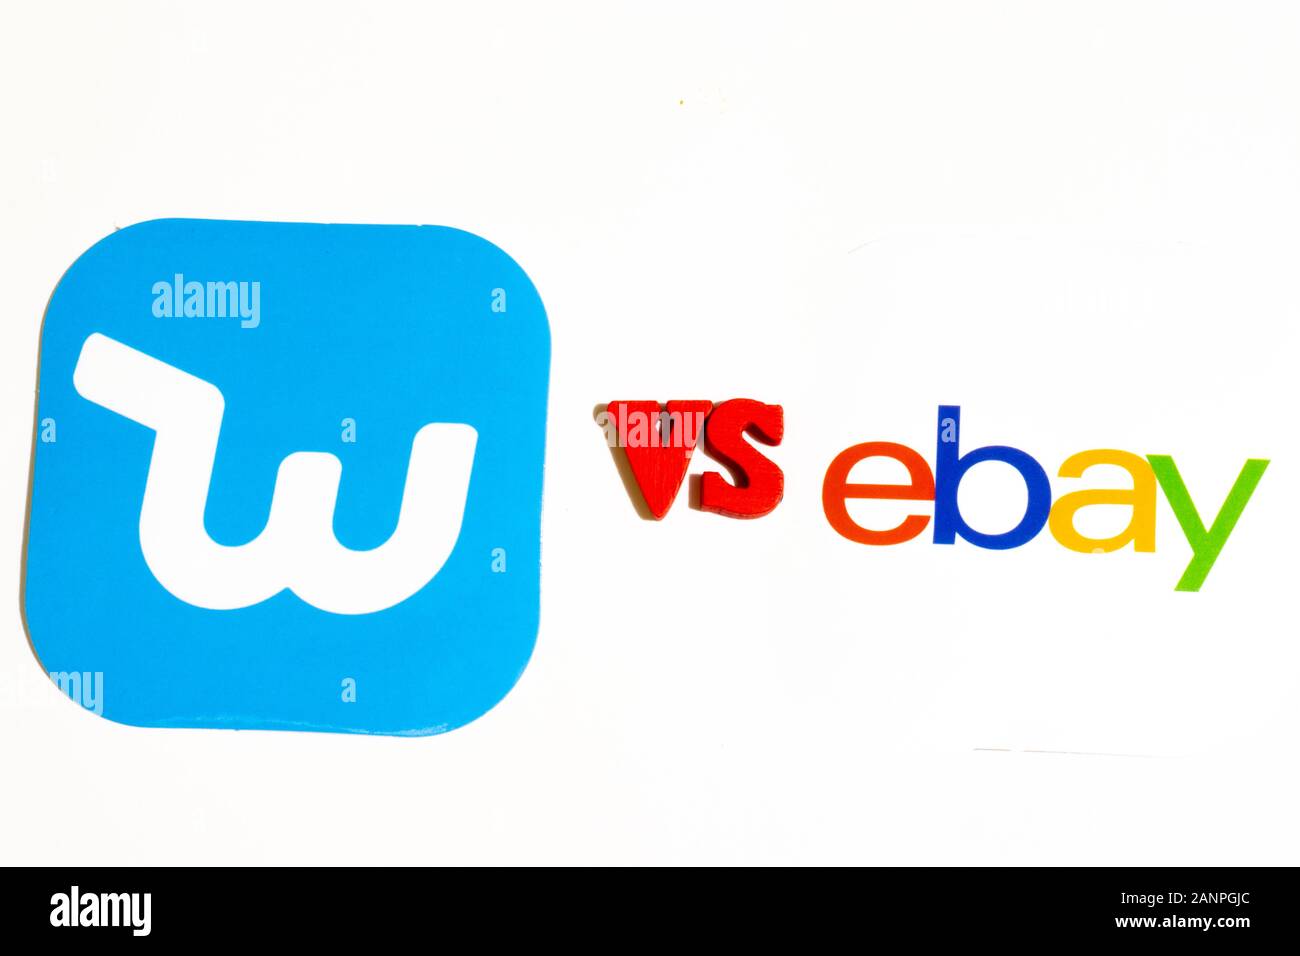 Los Angeles, Californie, États-Unis - 17 janvier 2020: EBay vs Wish concept, éditorial illustratif Banque D'Images